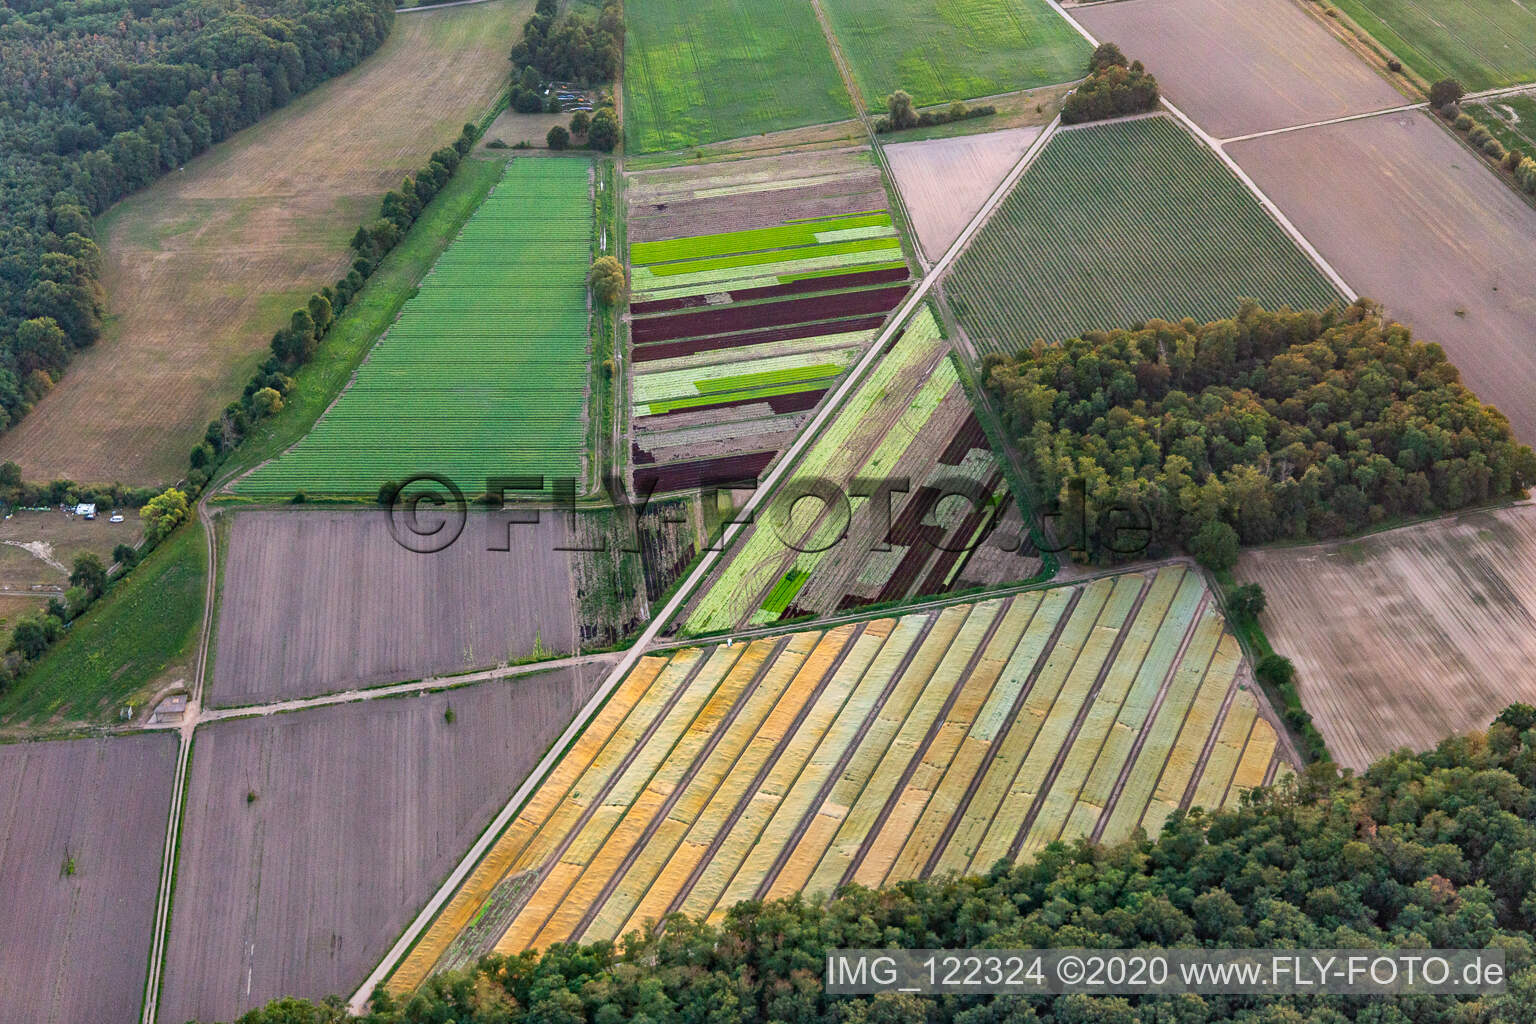 Vue aérienne de Salade composée à Lustadt dans le département Rhénanie-Palatinat, Allemagne